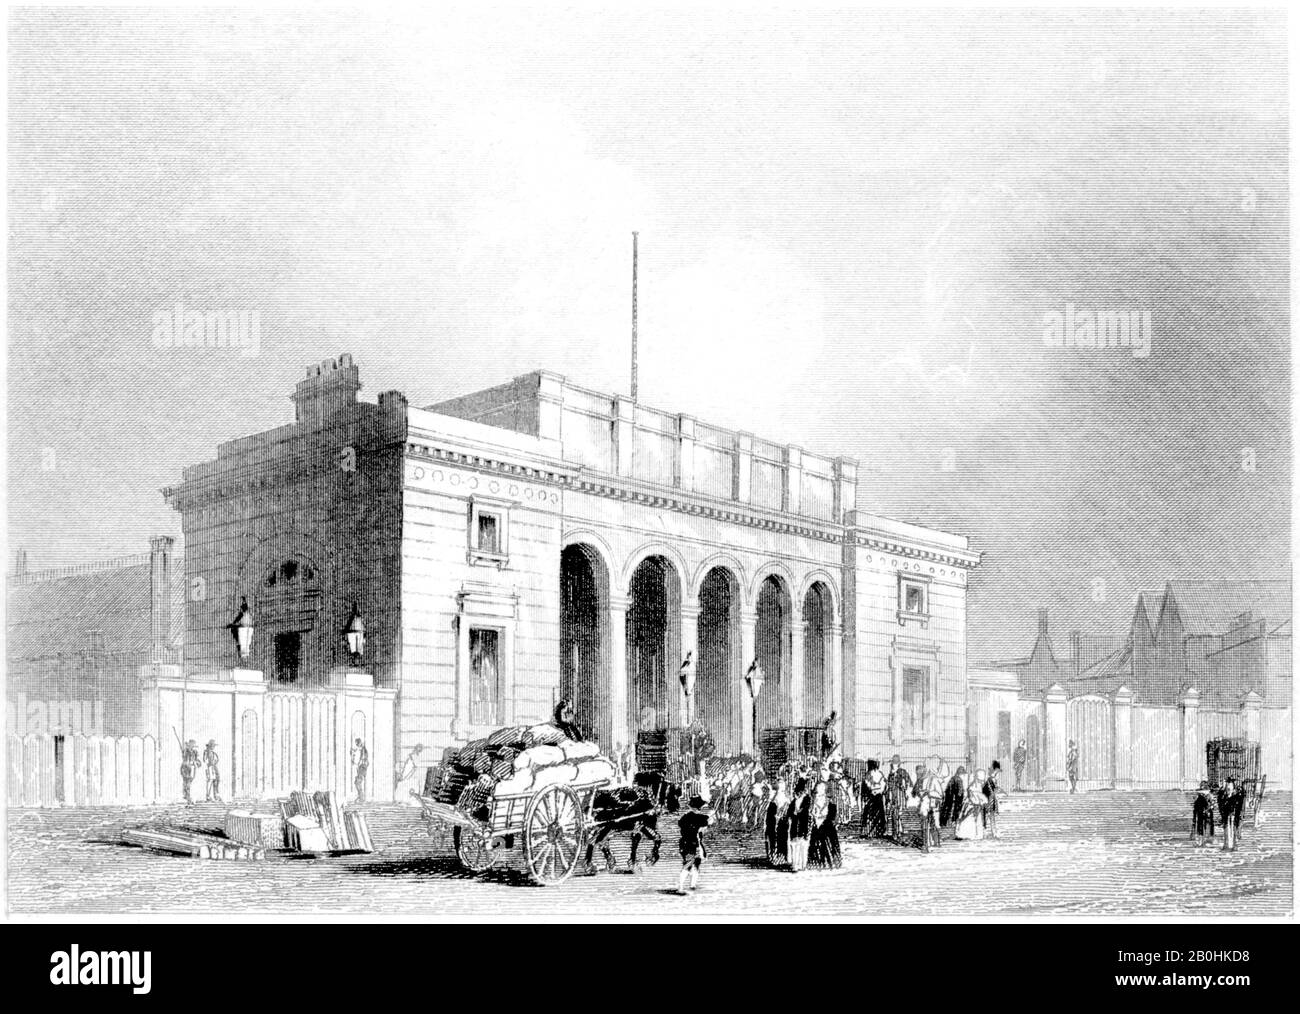 Eine Gravur des South Western Railway Station Nine Elms, London, gescannte in hoher Auflösung aus einem Buch, das im Jahr 1851 gedruckt wurde.Glaubte, dass das Urheberrecht frei sei. Stockfoto